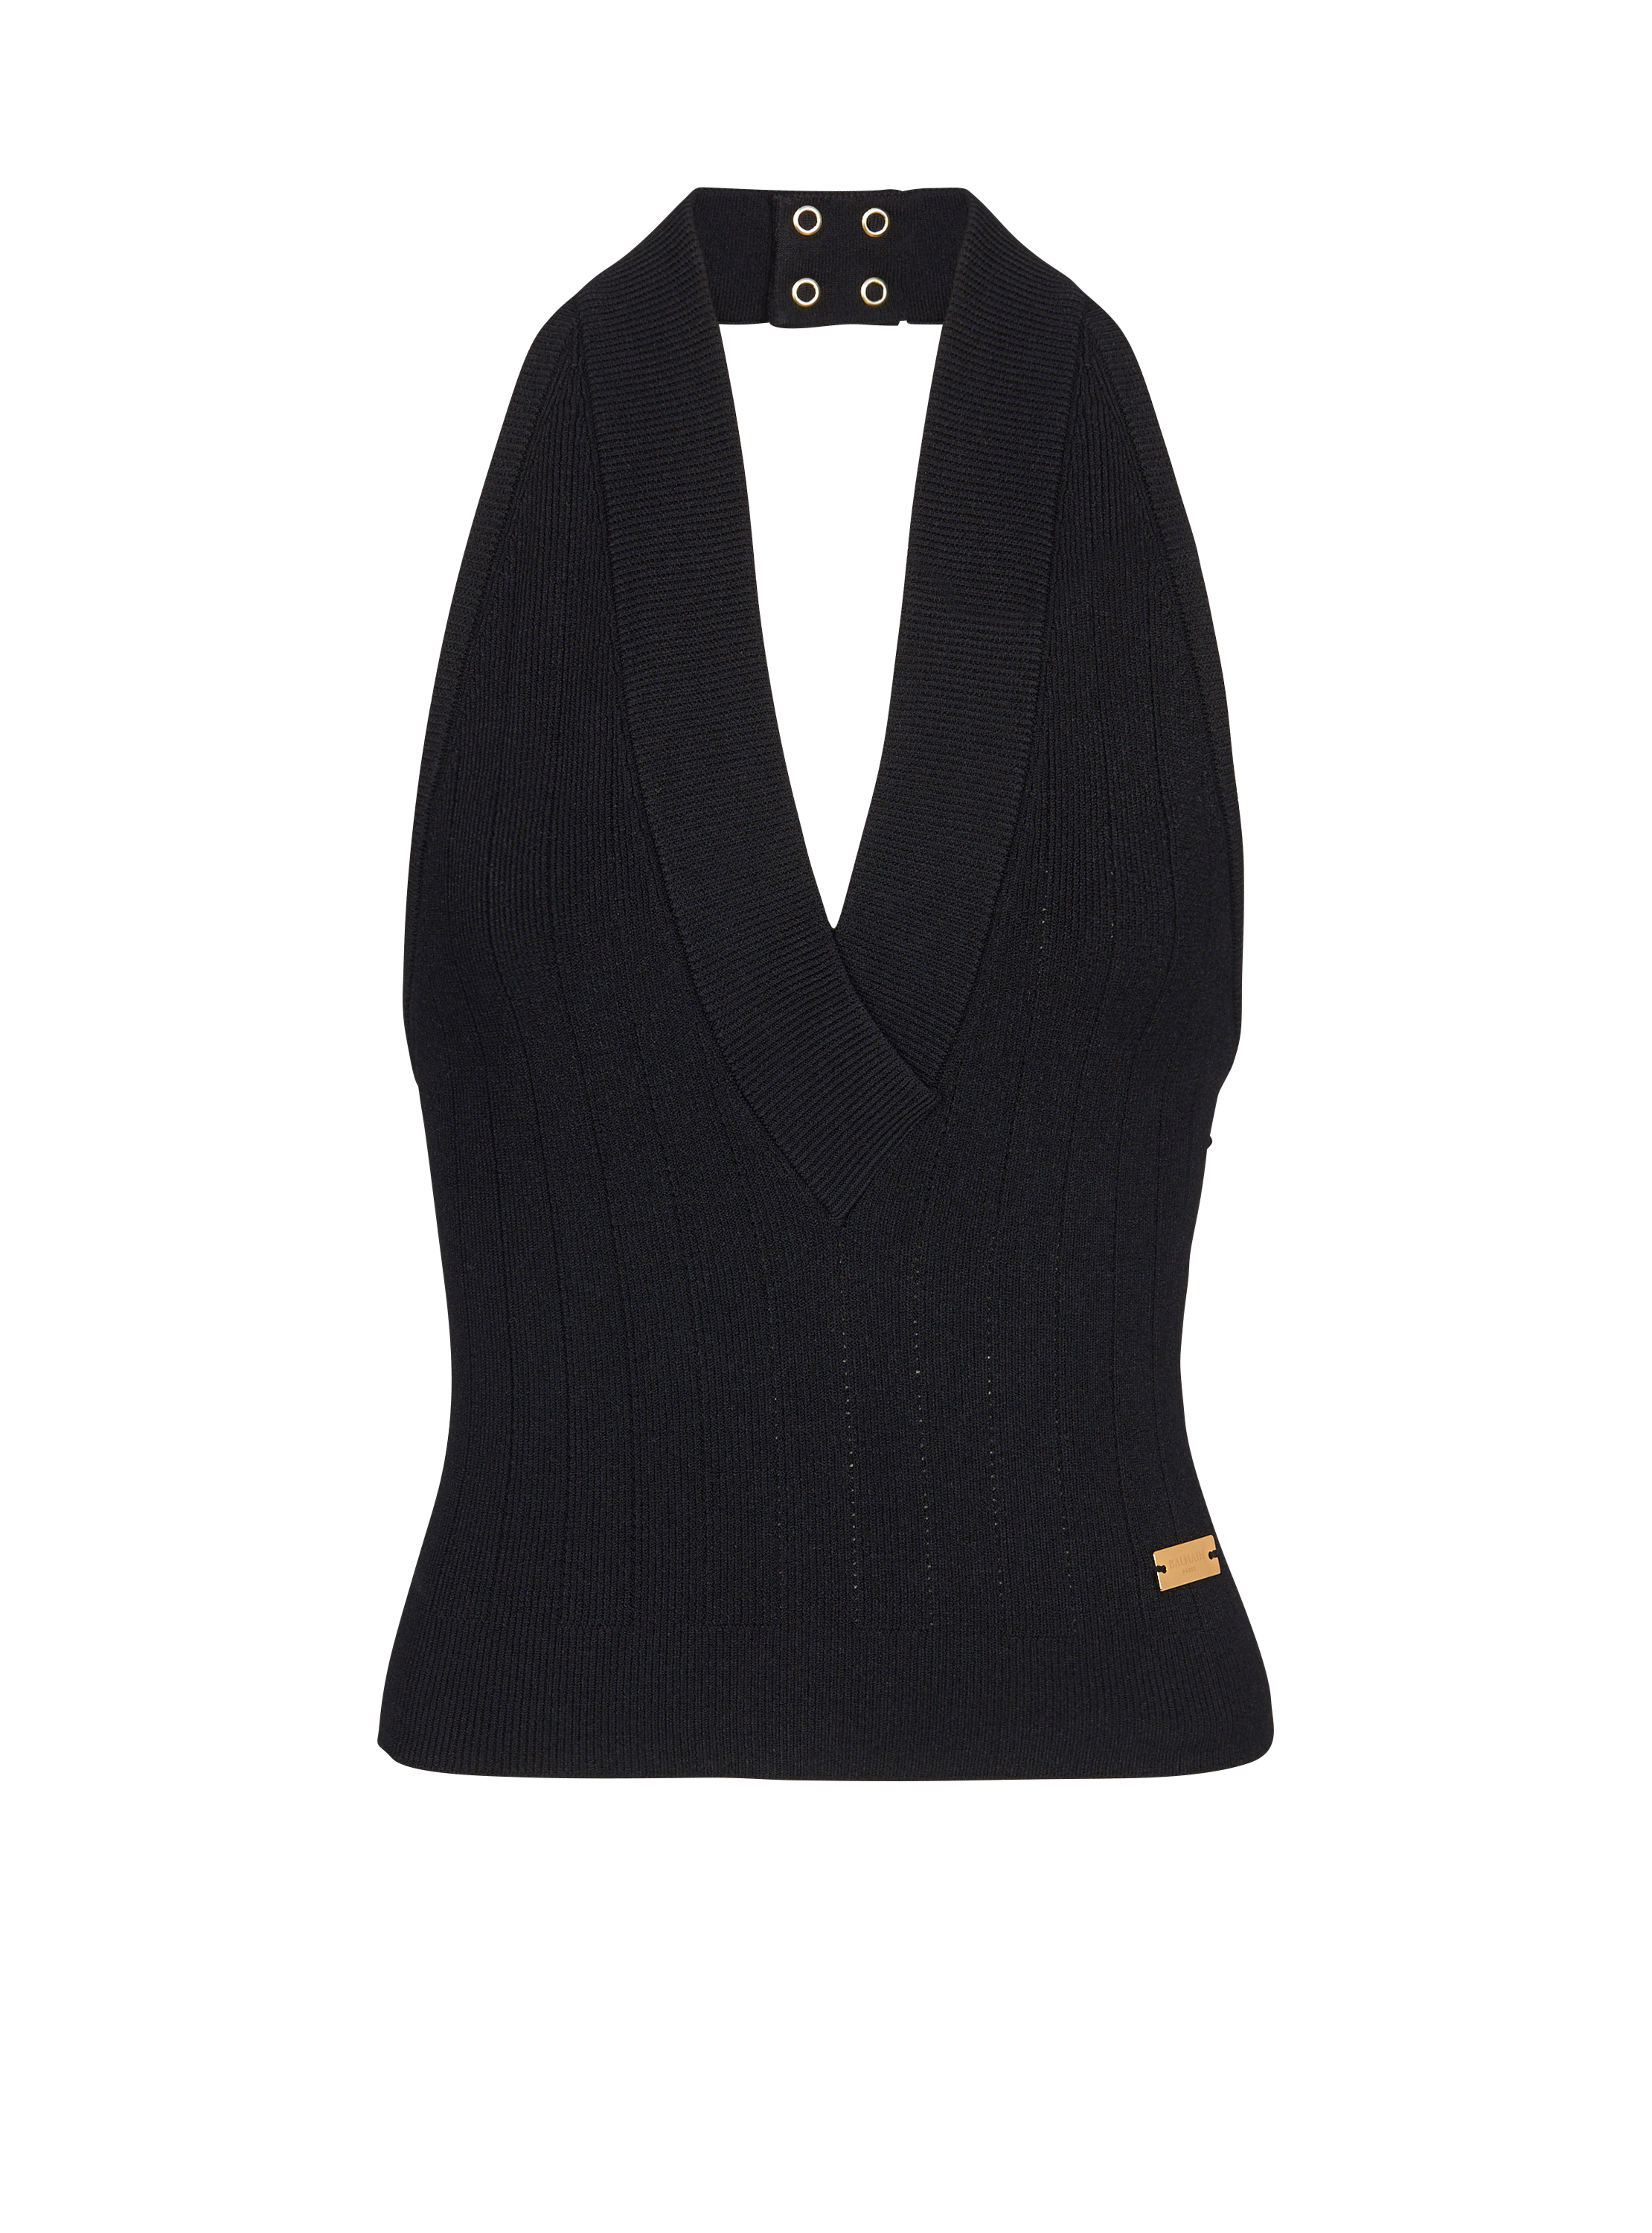 Knit backless top, black, hi-res